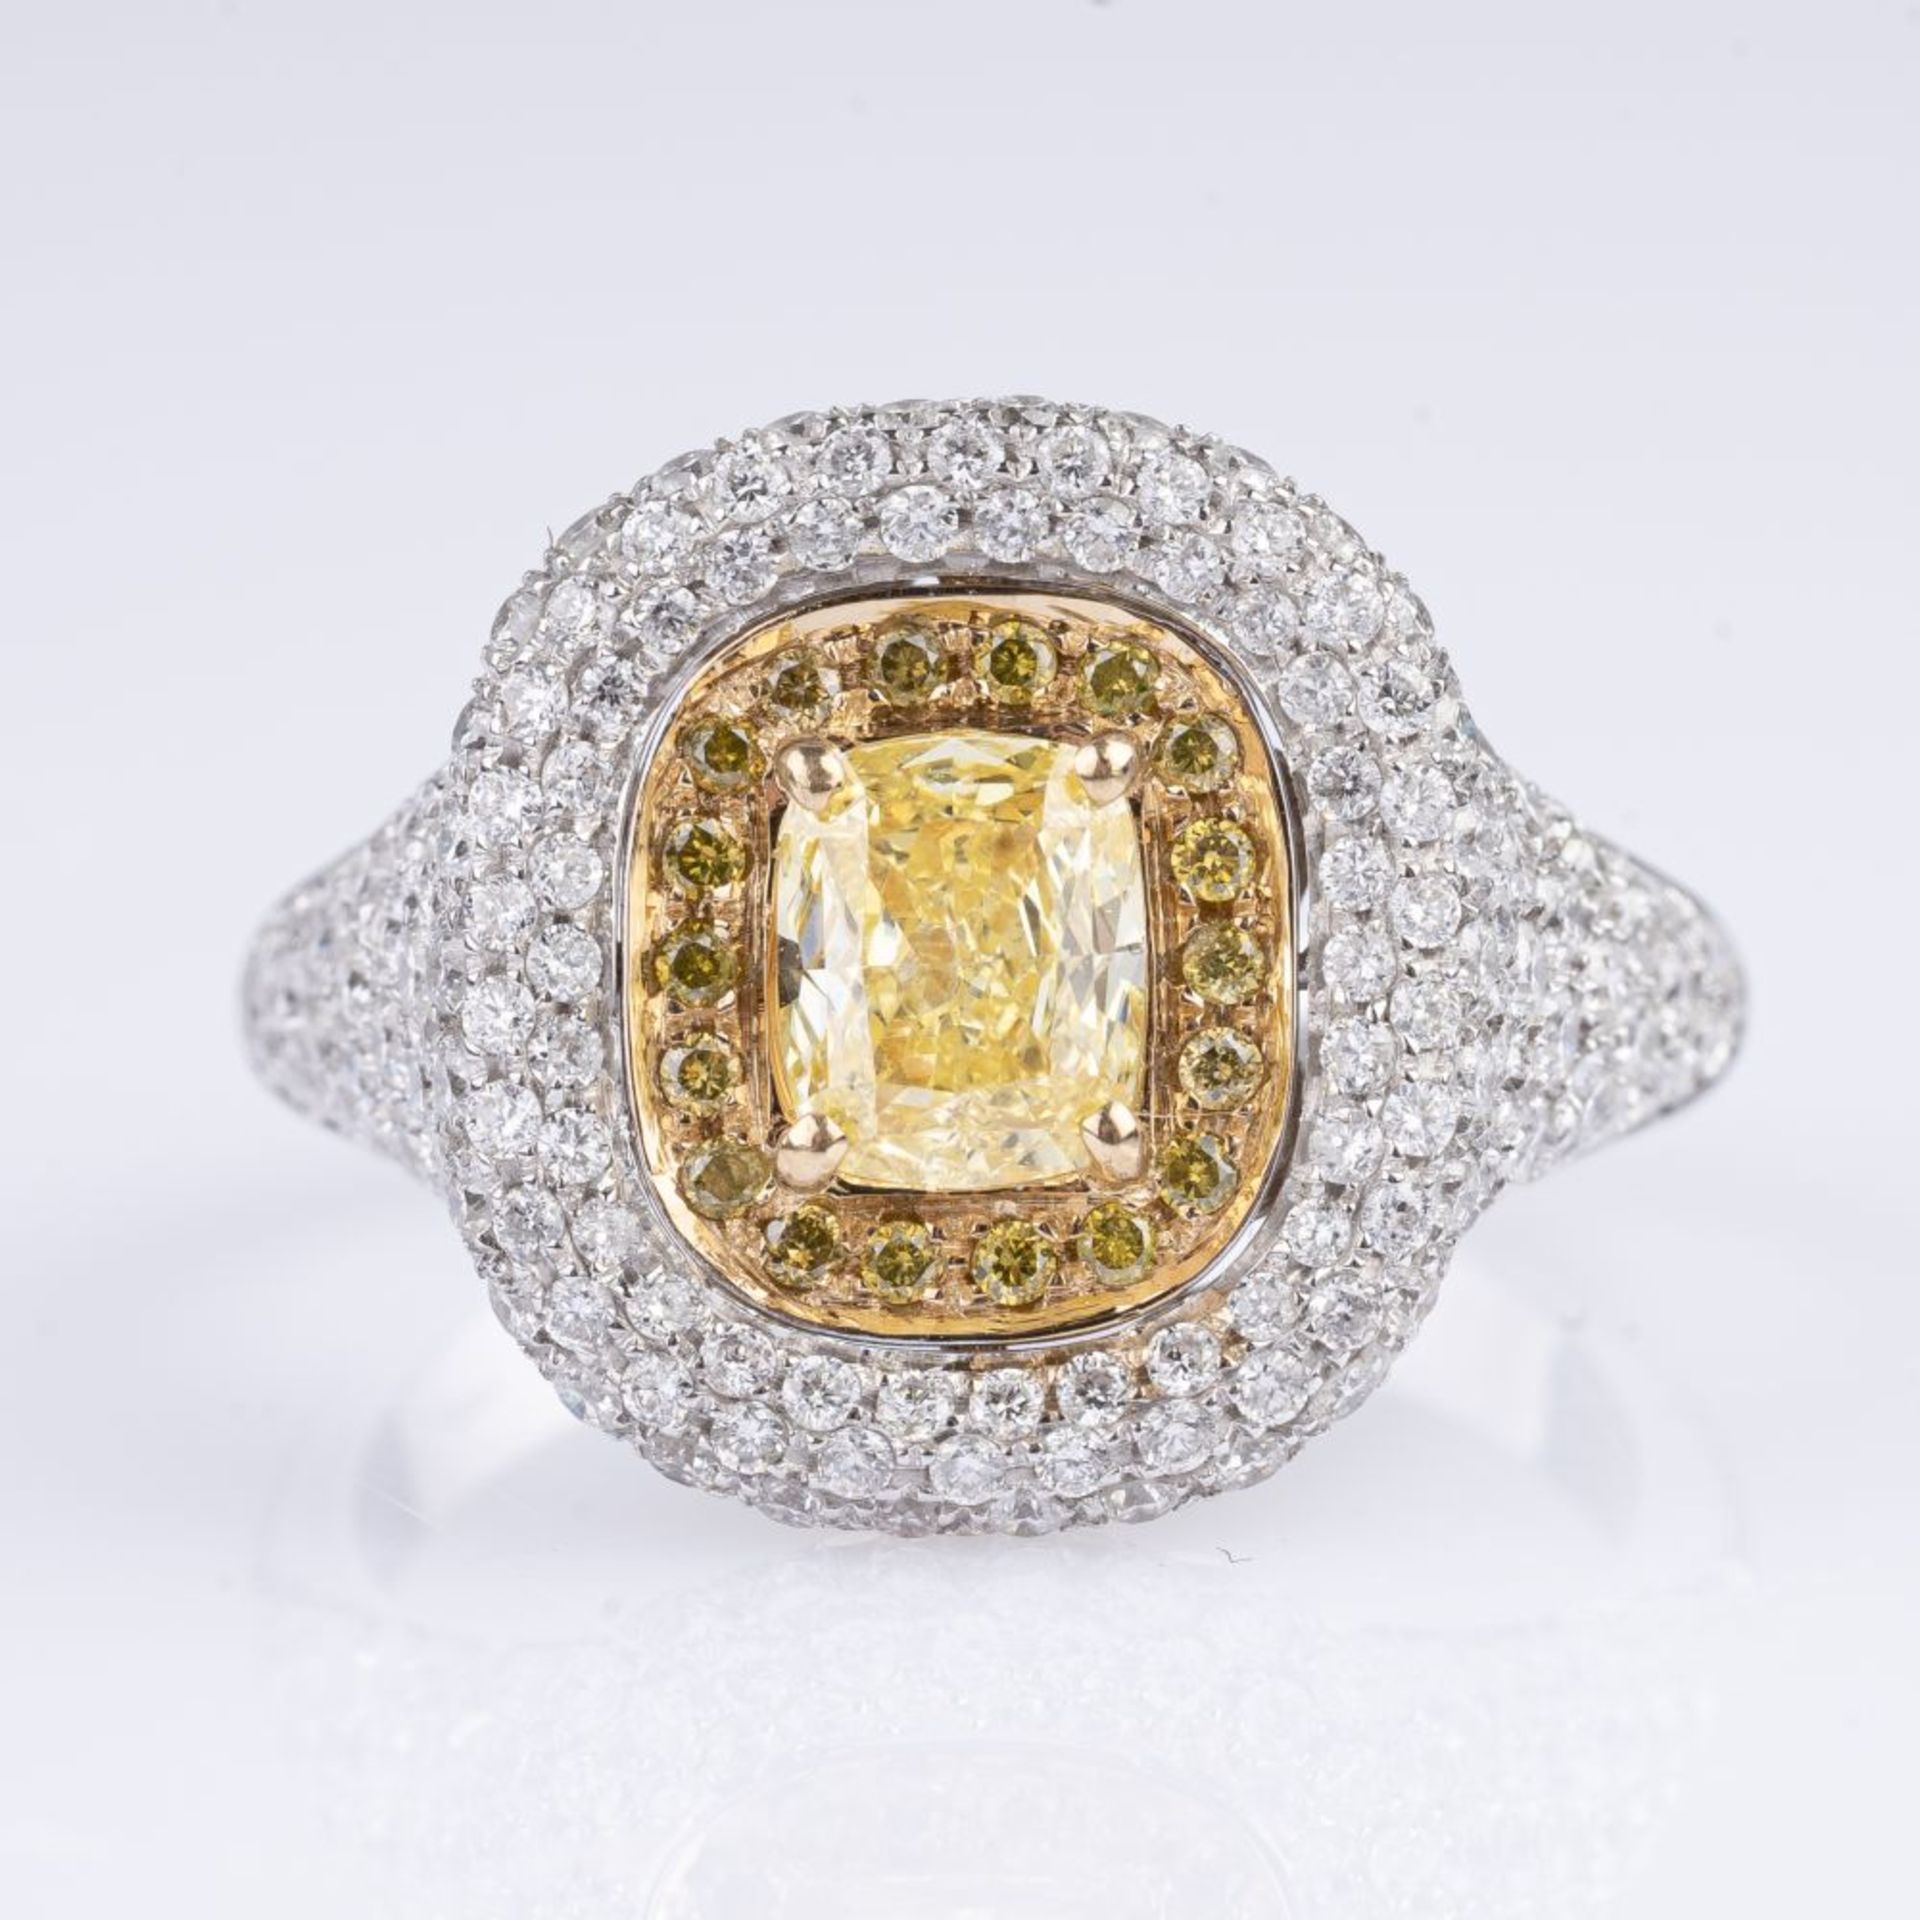 A Fancy Diamond Ring.